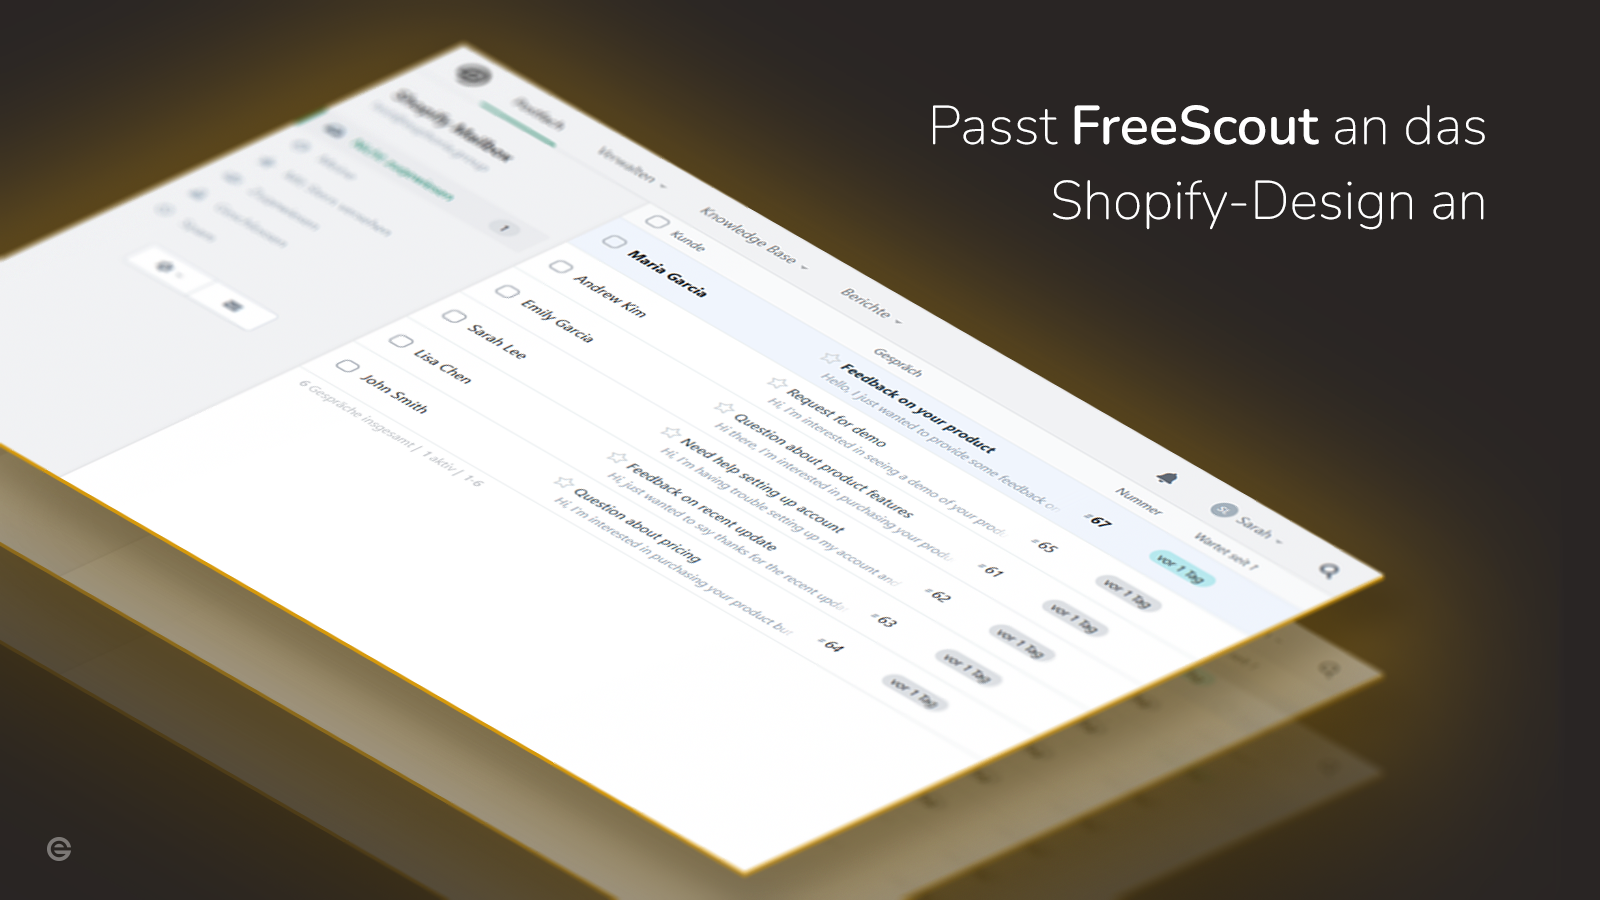 Passt FreeScout an das Shopify-Design an